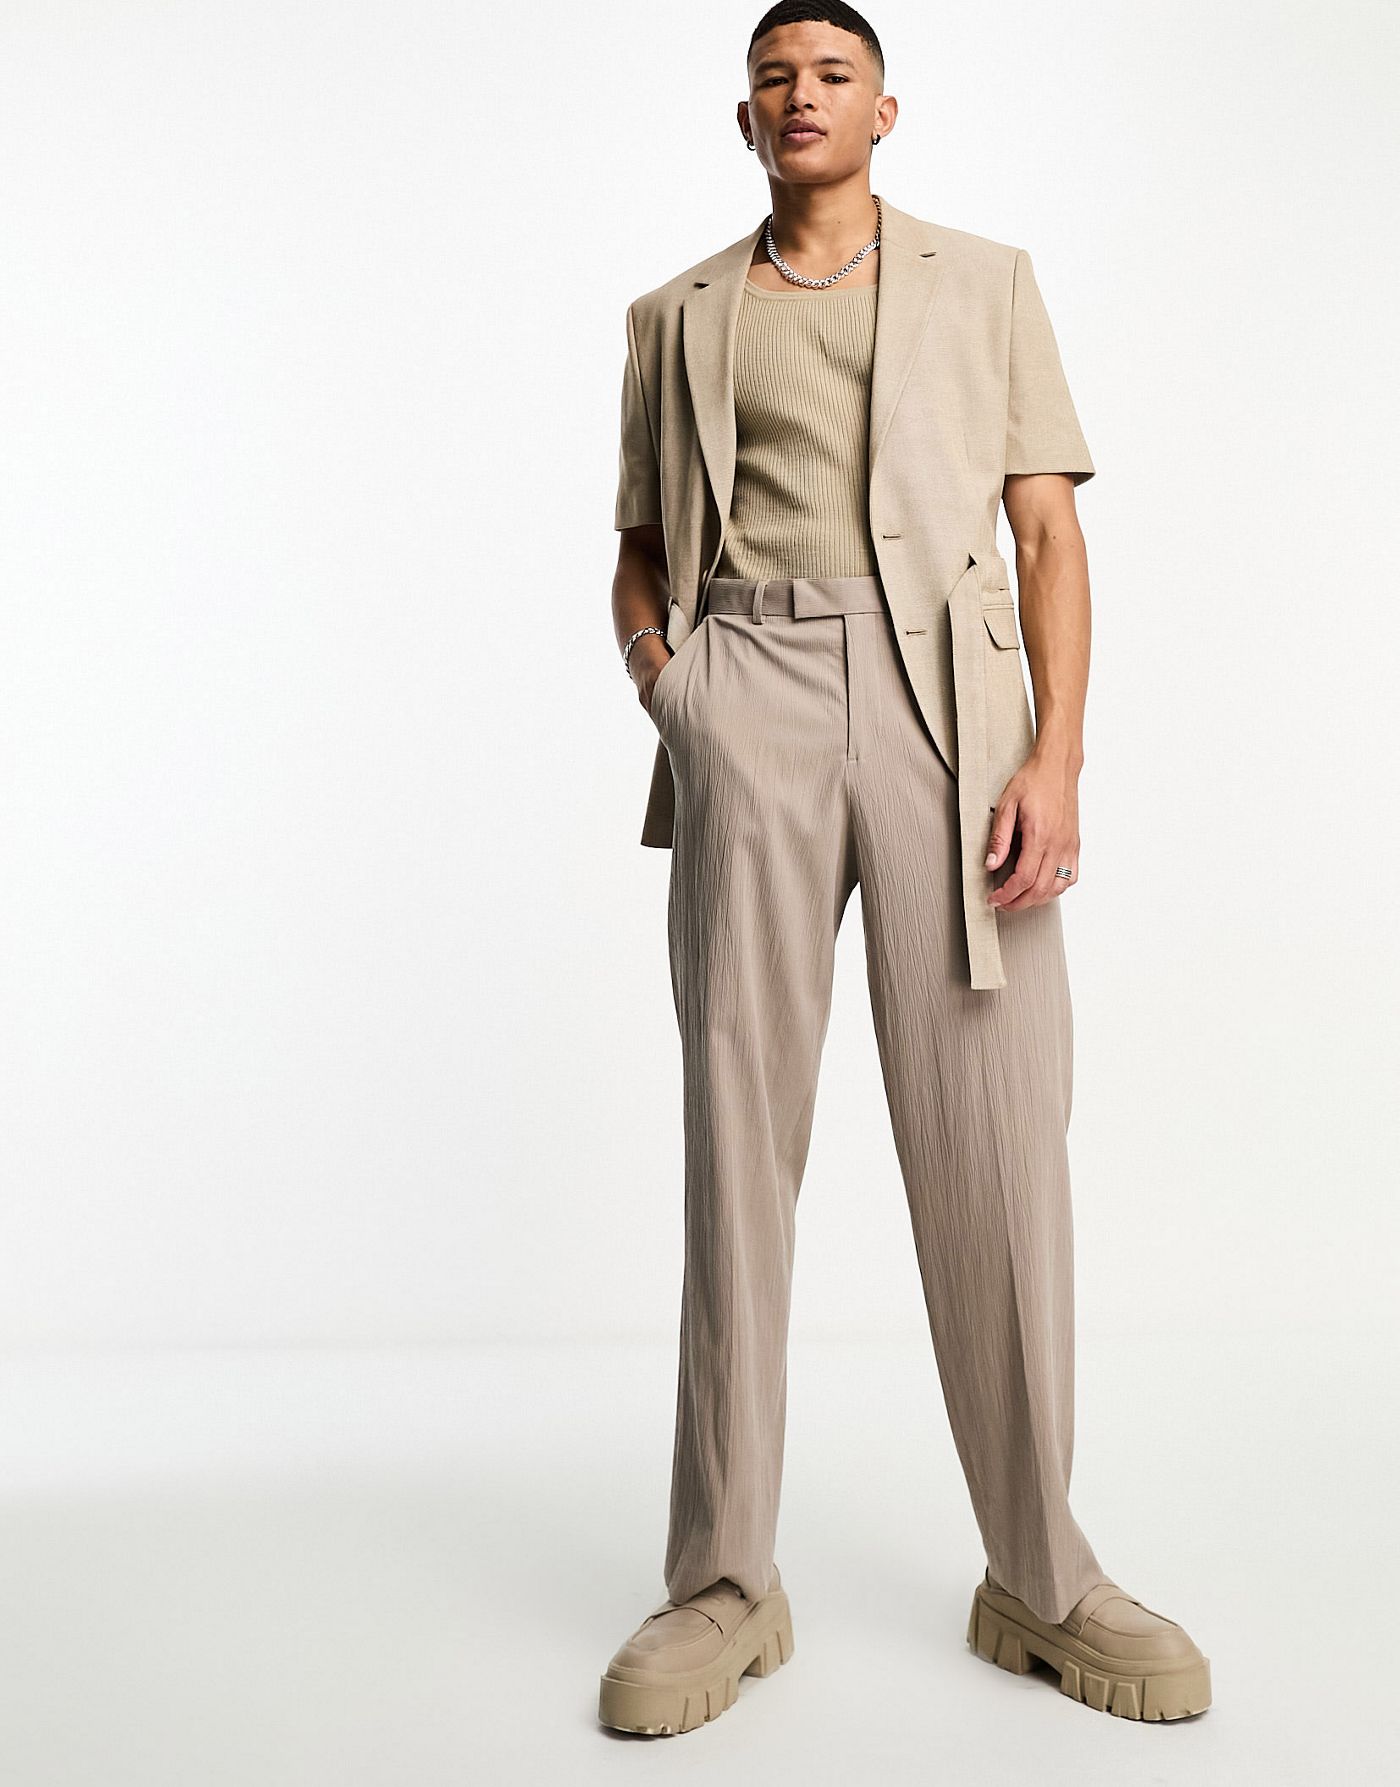 ASOS DESIGN short sleeved belted suit jacket in light brown